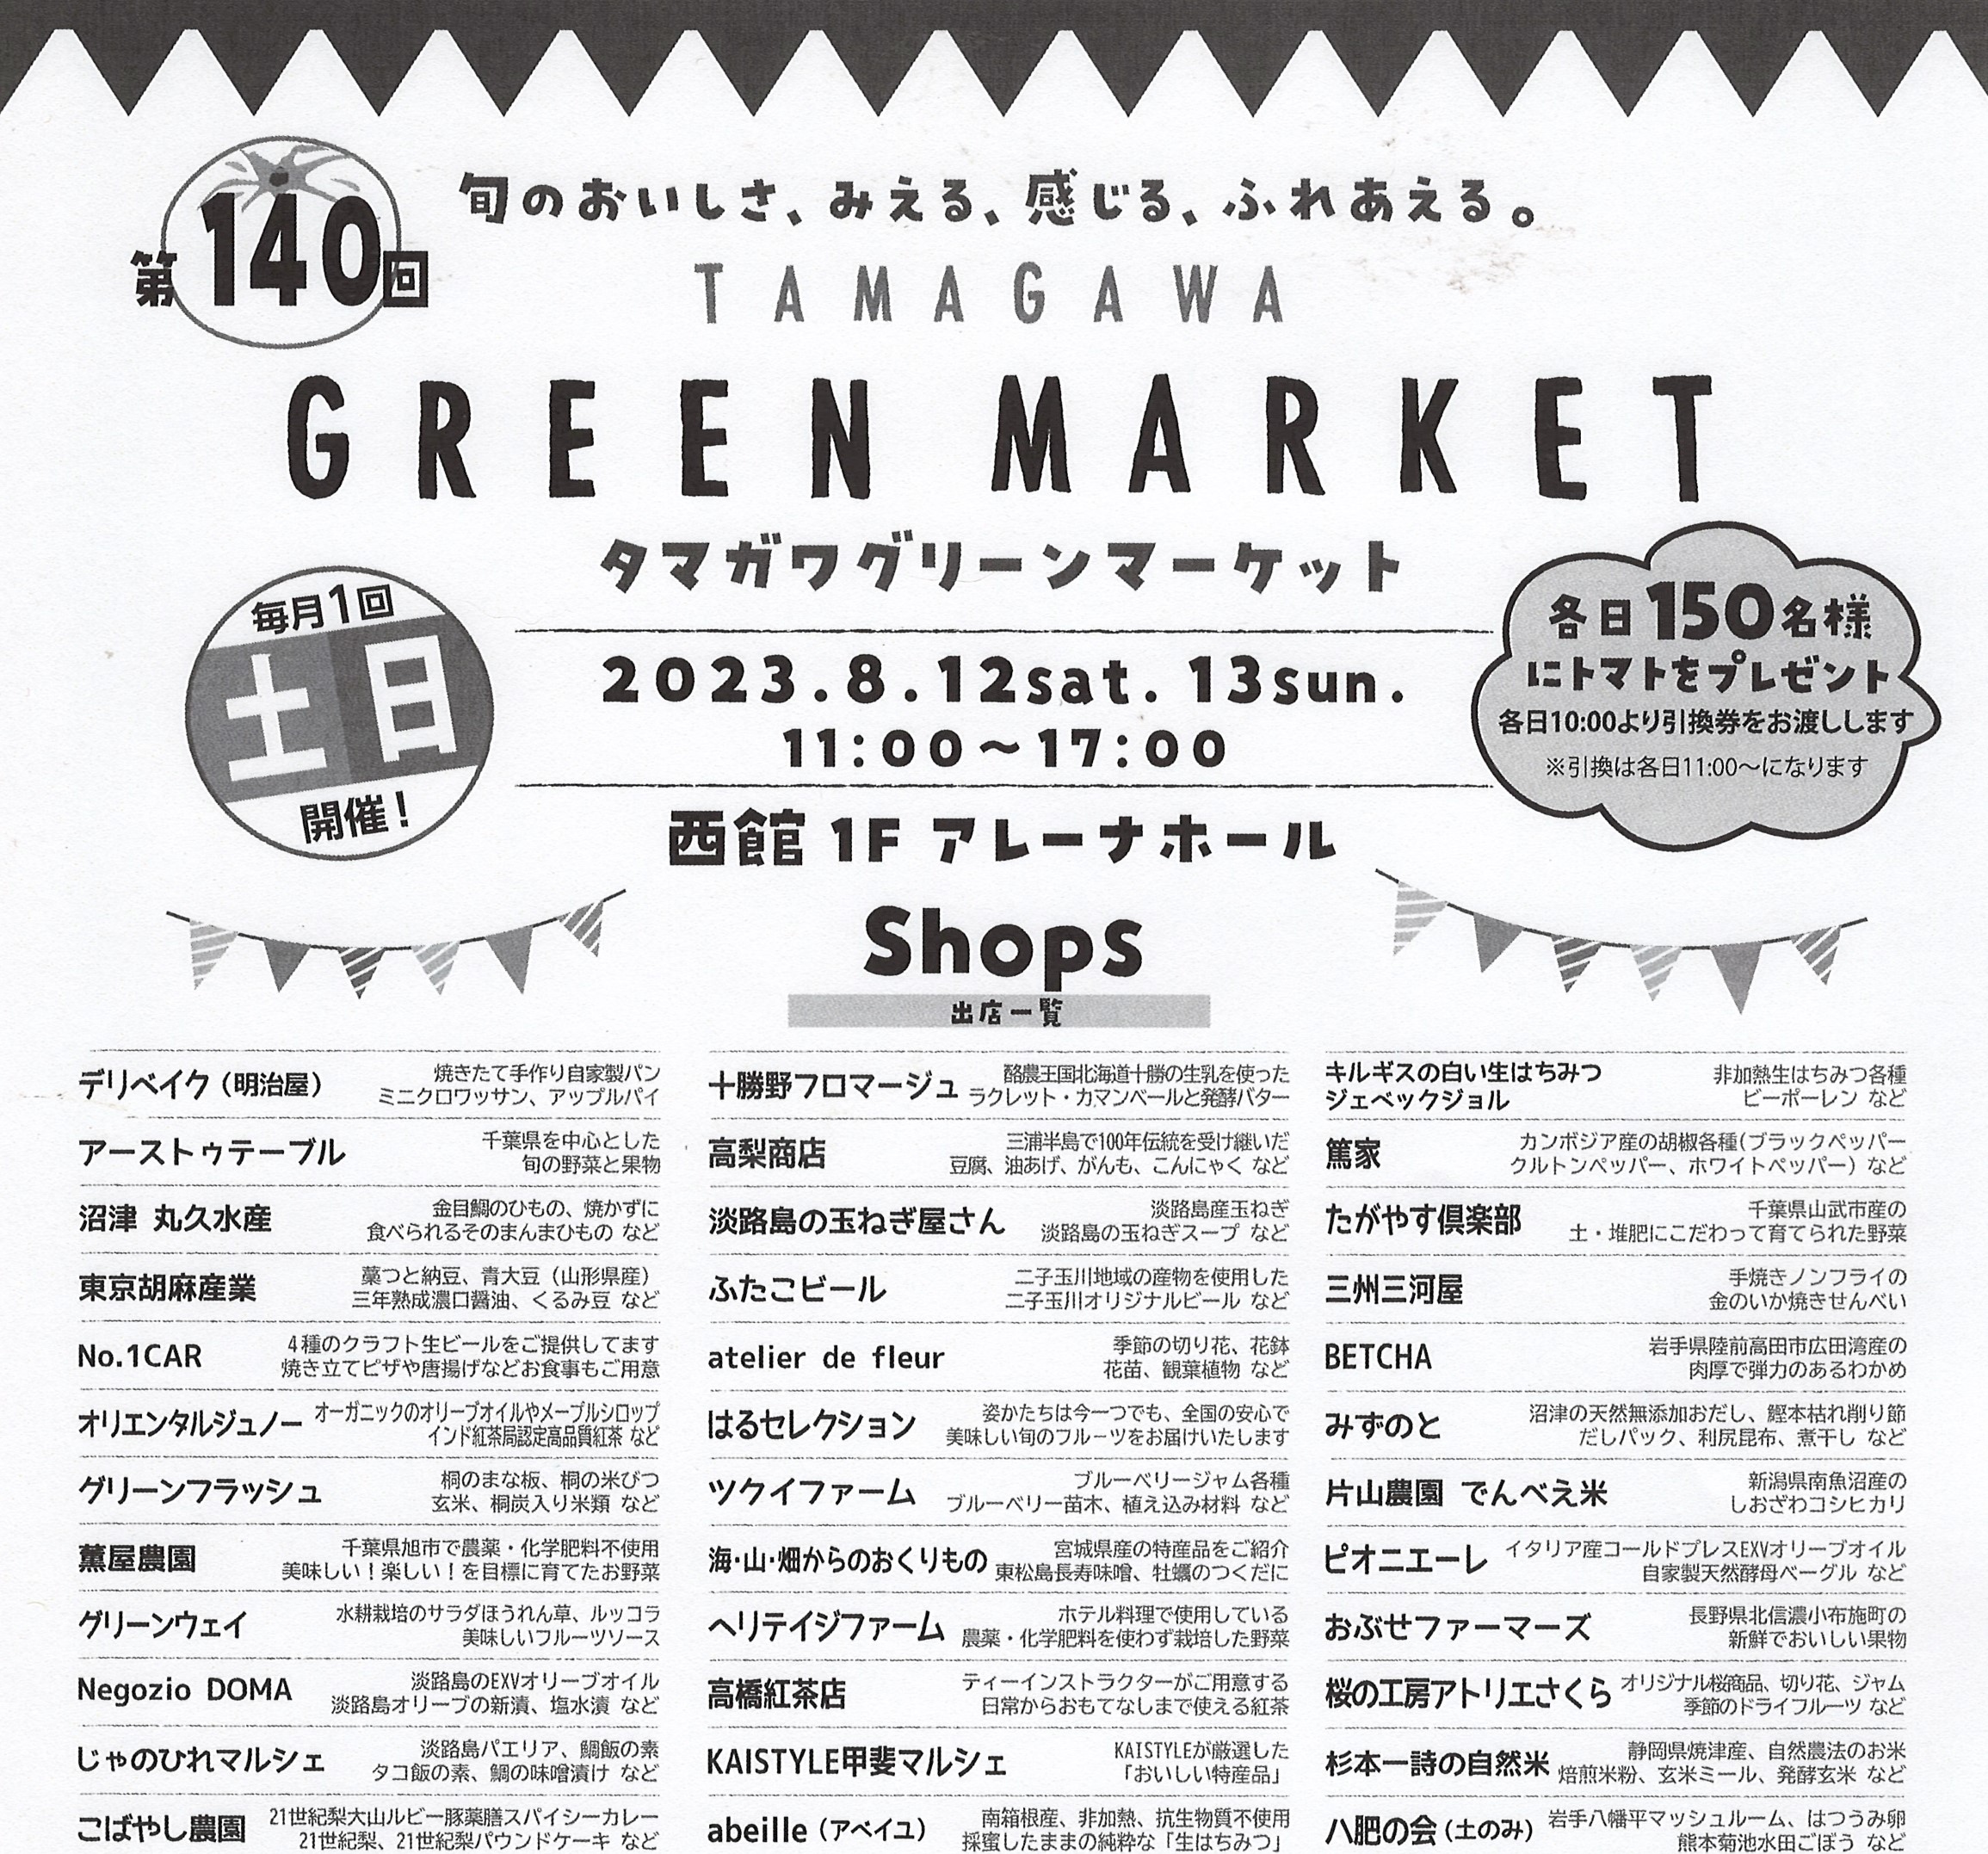 8月12日、13日は、玉川高島屋グリーンマーケットです。